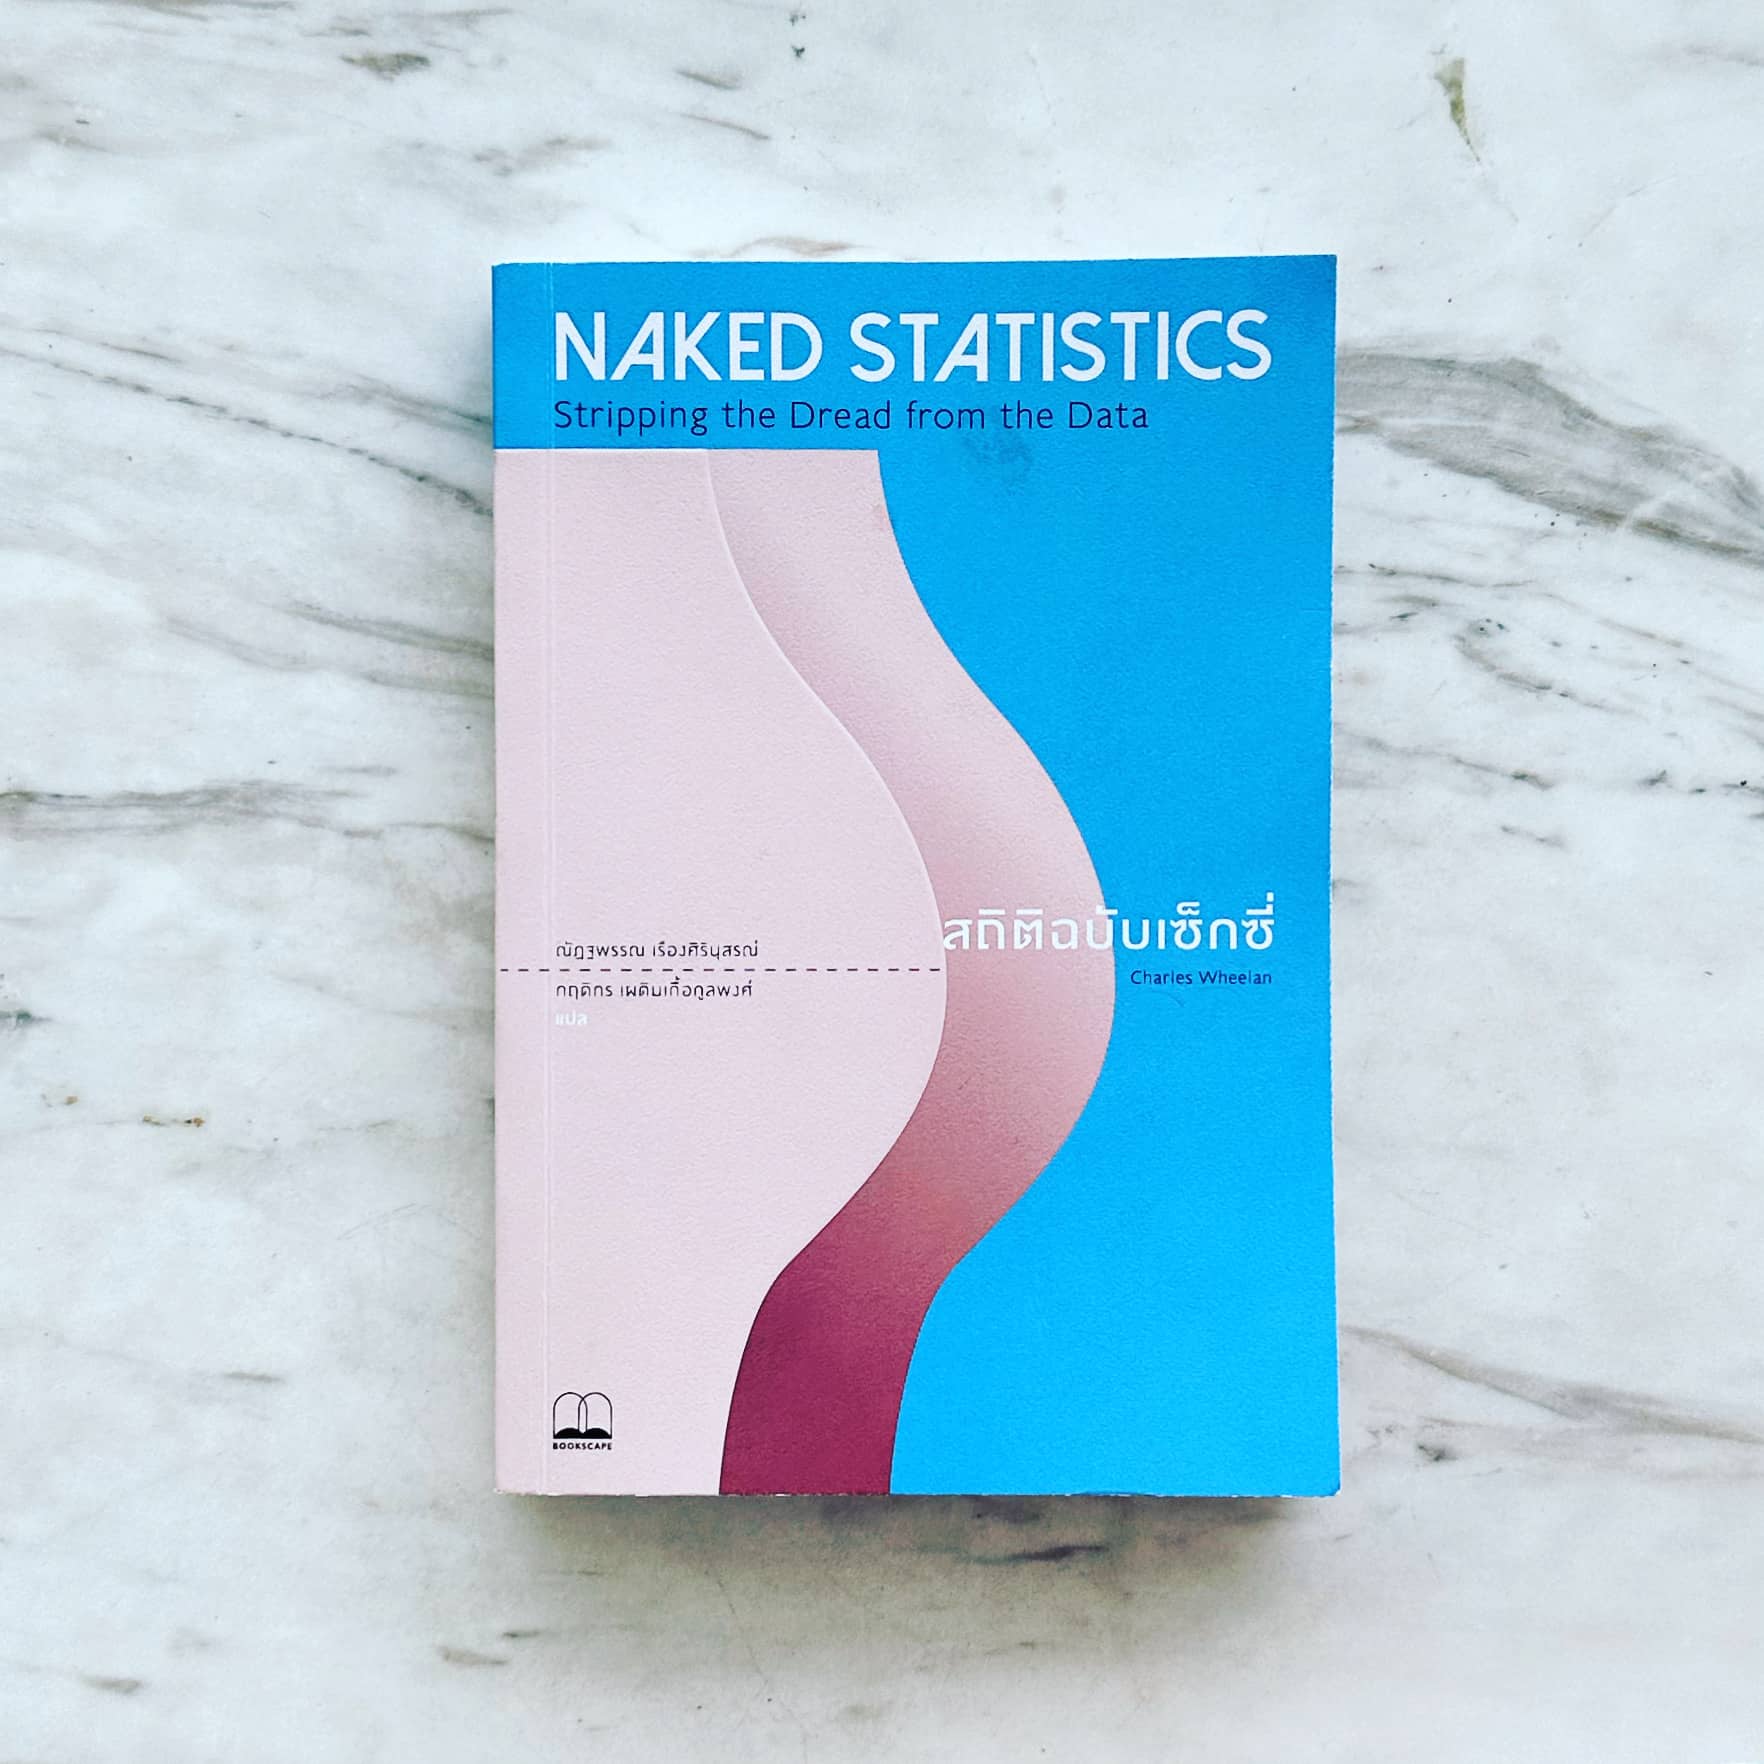 สรุปหนังสือ Naked Statistics สถิติฉบับเซ็กซี่ Stripping the Dread from the Data Charles Wheelan เขียน สำนักพิมพ์ Bookscape